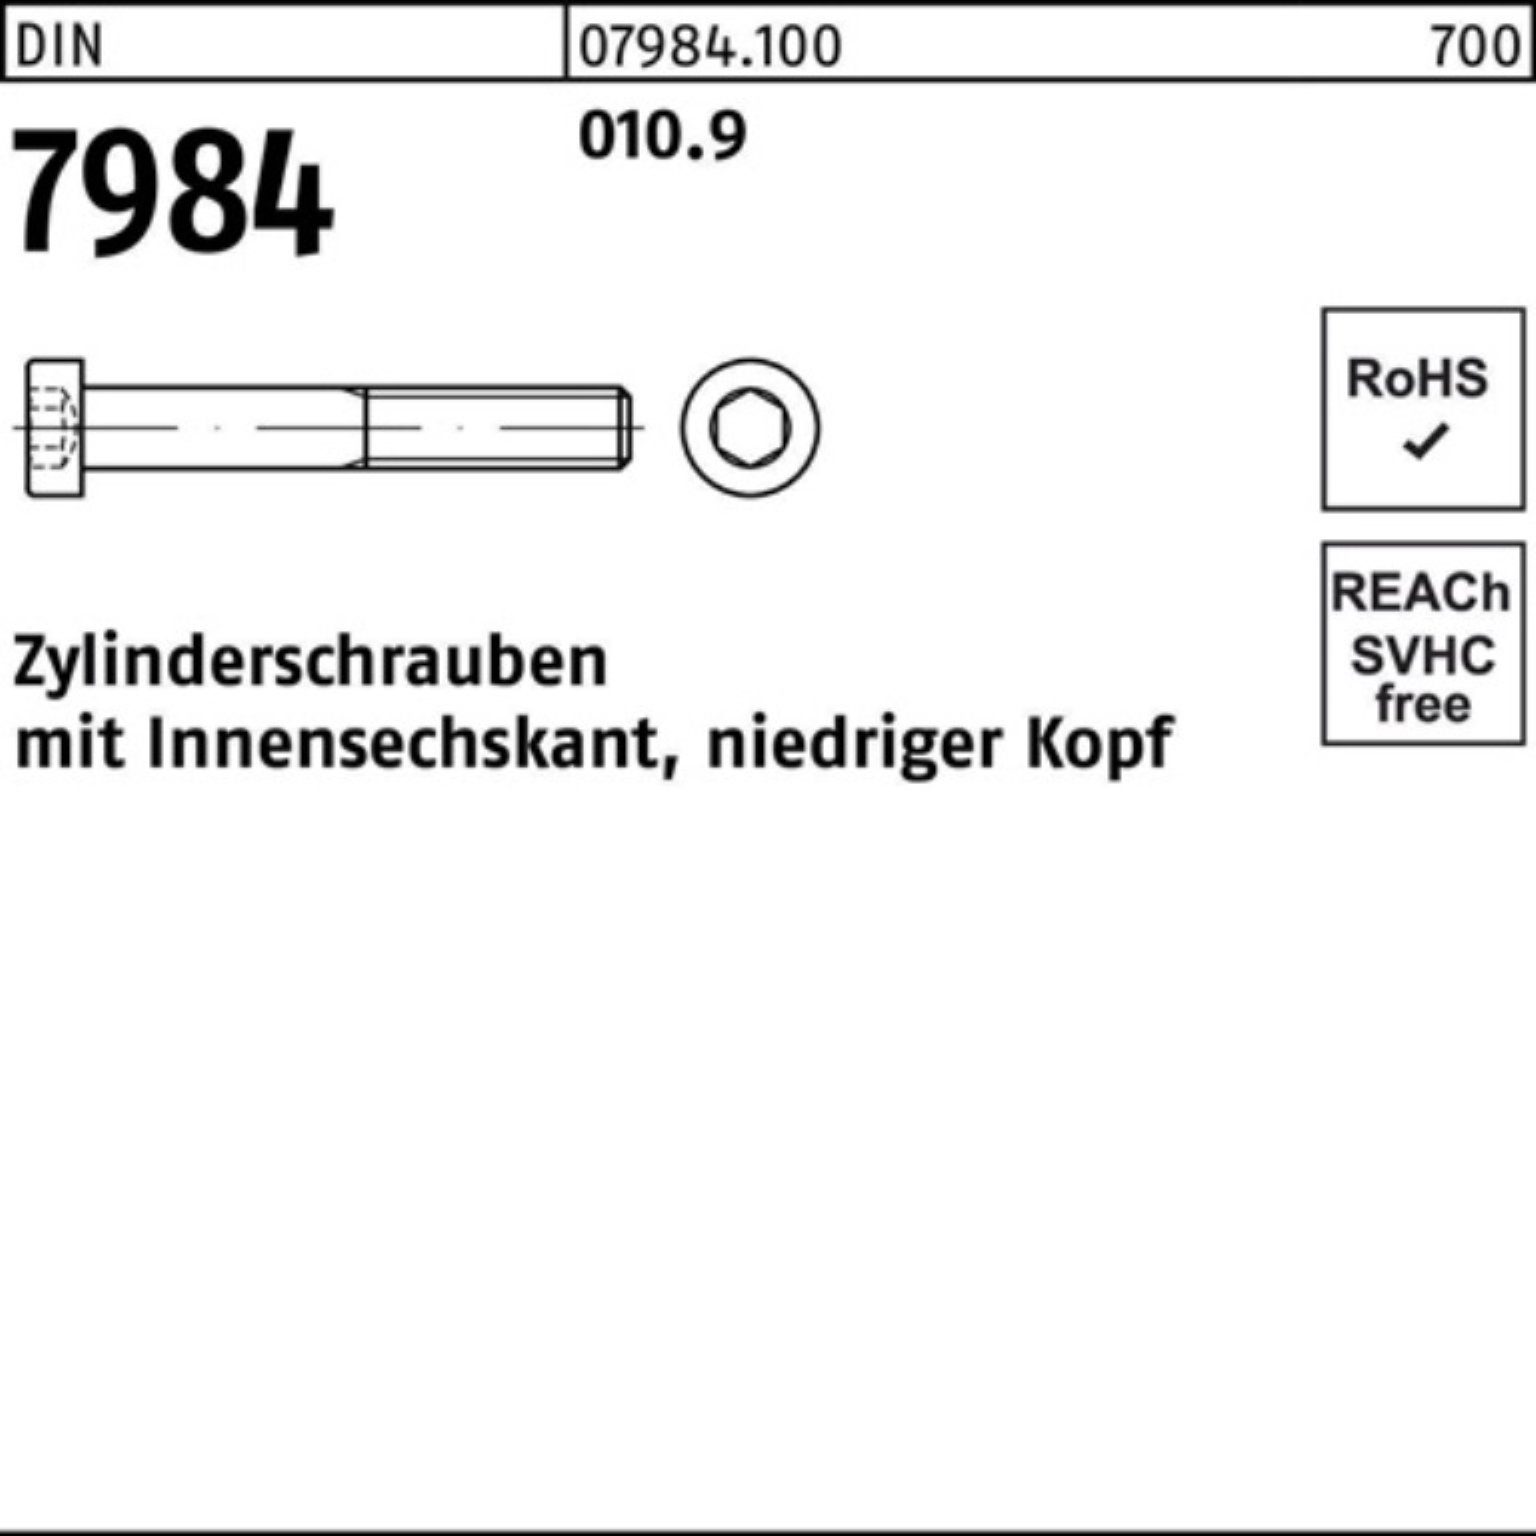 Reyher Zylinderschraube Stück Innen-6kt 16 500er Pack 010.9 7984 DIN M4x Zylinderschraube 500